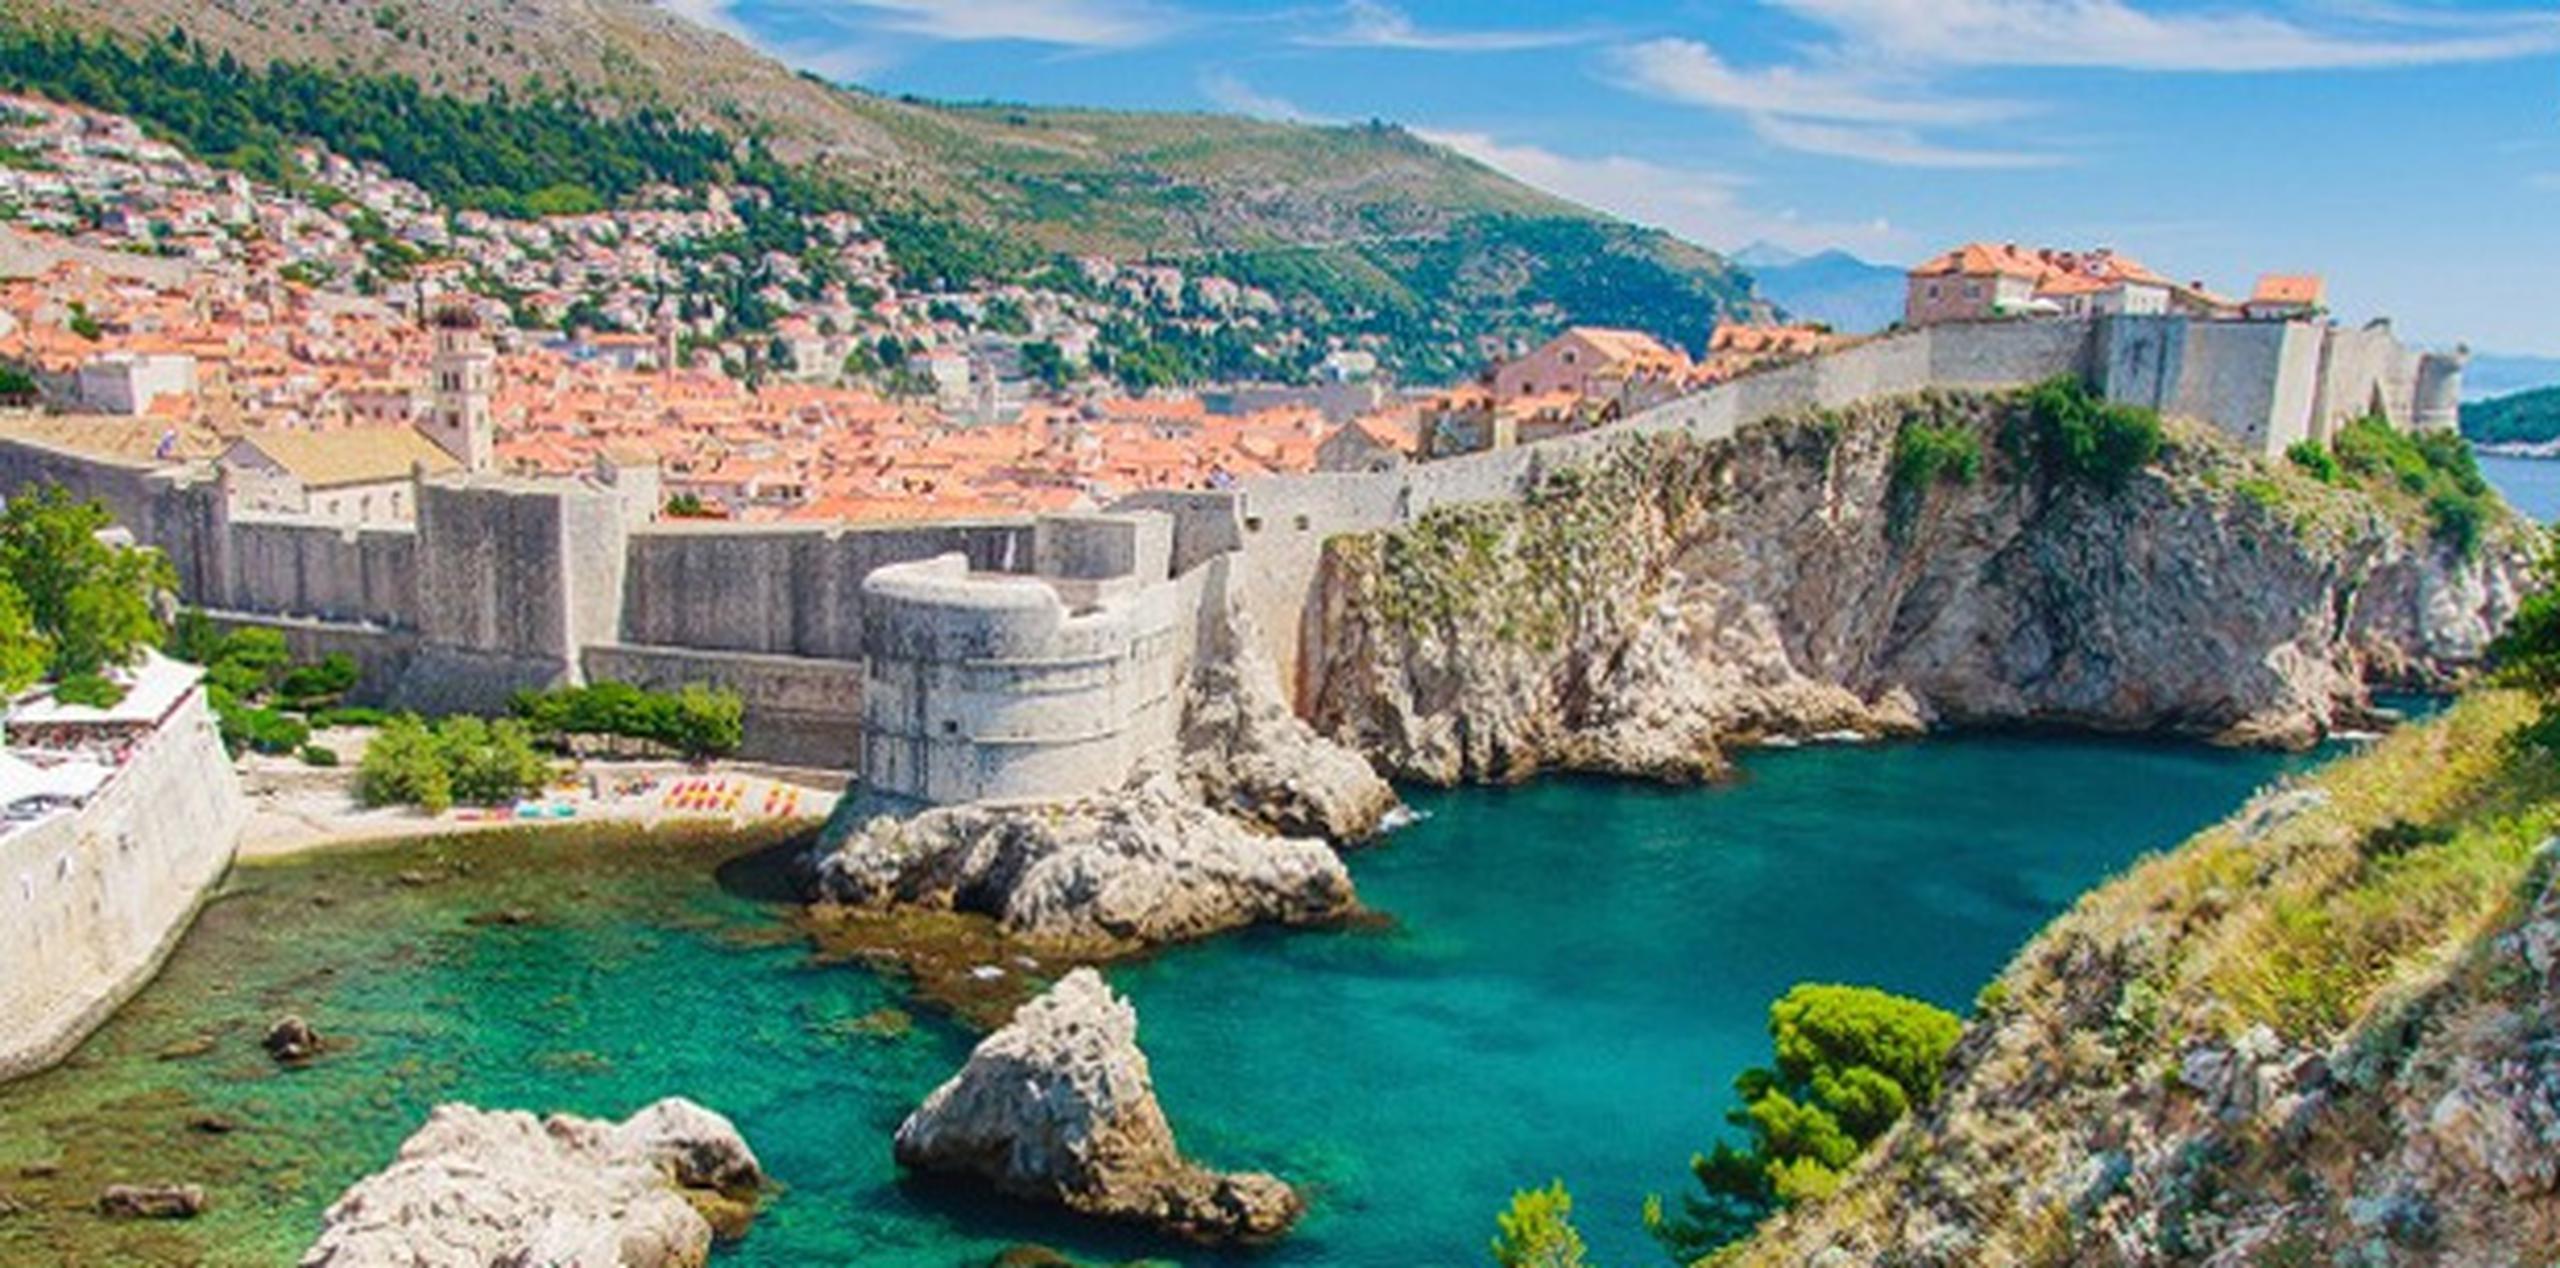 La localidad croata de Dubrovnik sirve de escenario para la capital de Westeros, King's Landing.